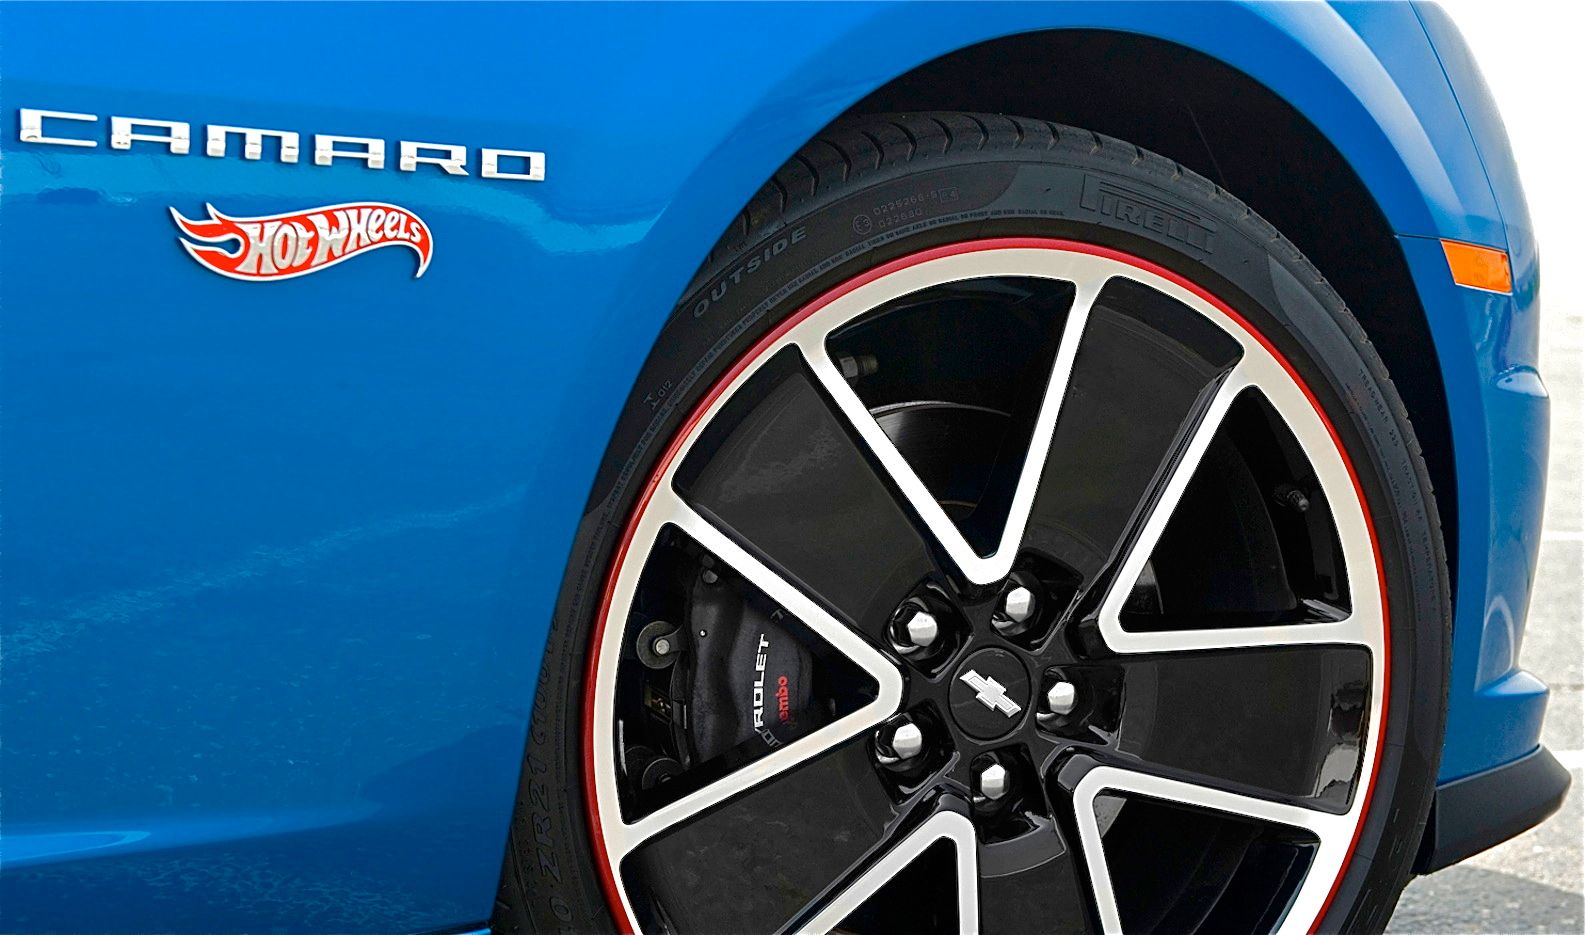 GM OEM Wheels Tires